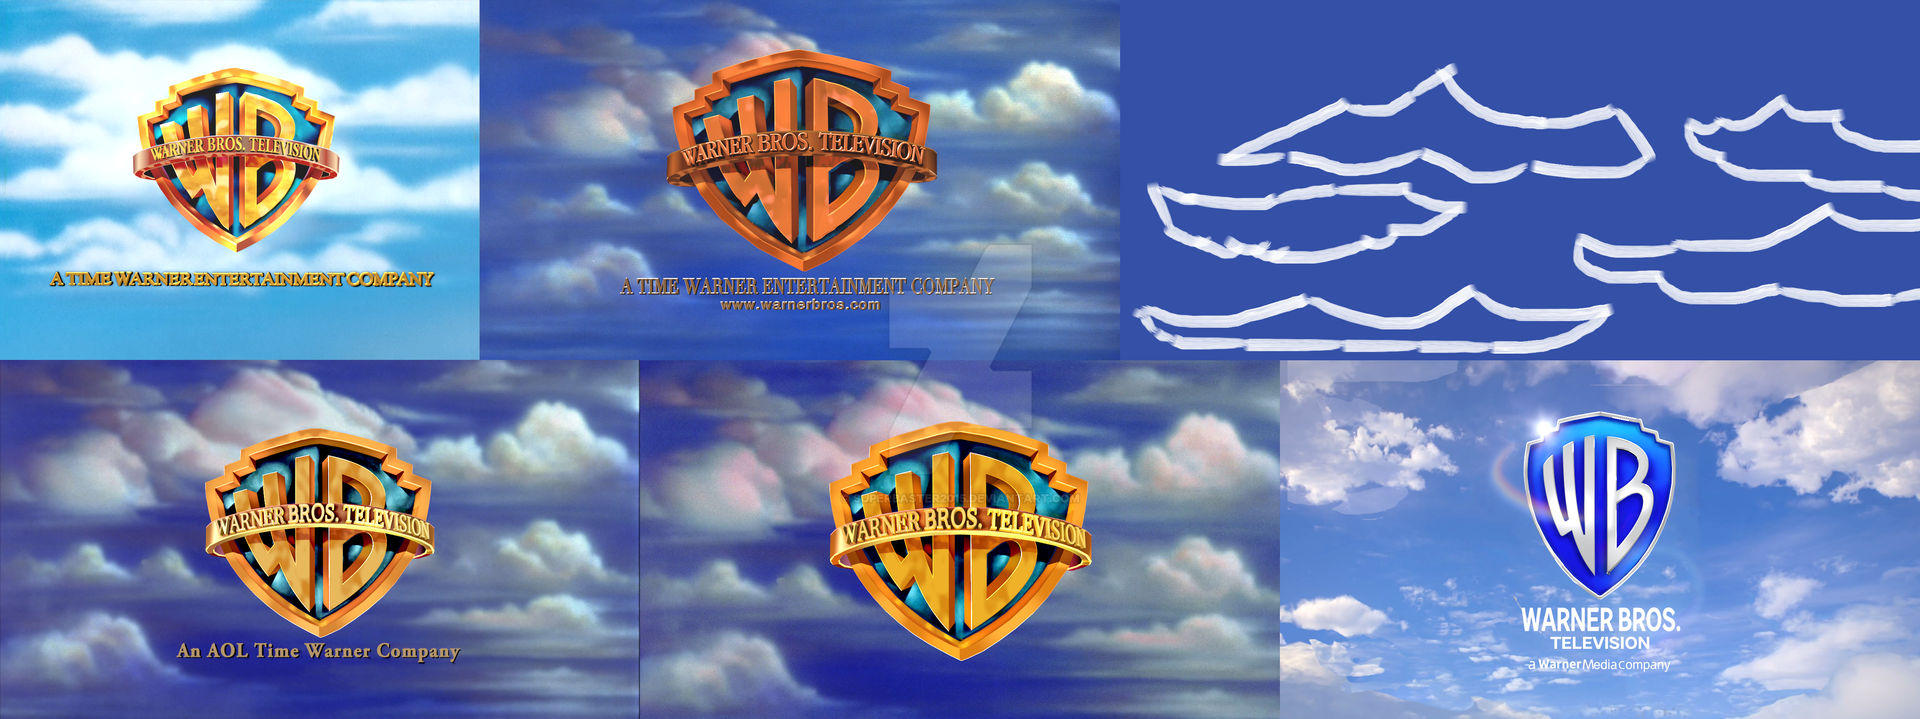 Warner Bros Television  1994 2021  Logo Remakes By Superbaster2015 Det4rw3 Fullview ?token=eyJ0eXAiOiJKV1QiLCJhbGciOiJIUzI1NiJ9.eyJzdWIiOiJ1cm46YXBwOjdlMGQxODg5ODIyNjQzNzNhNWYwZDQxNWVhMGQyNmUwIiwiaXNzIjoidXJuOmFwcDo3ZTBkMTg4OTgyMjY0MzczYTVmMGQ0MTVlYTBkMjZlMCIsIm9iaiI6W1t7InBhdGgiOiJcL2ZcL2UwZDFmMTM0LWFlZTctNGU0Ni1iMGYzLWQ4MWRiYzI5YzNlNlwvZGV0NHJ3My1kMzM2NzNiMC0xOTBhLTQzY2YtYTUwMC01ZmY4MDc3YzA3NWMucG5nIiwiaGVpZ2h0IjoiPD03MTkiLCJ3aWR0aCI6Ijw9MTkyMCJ9XV0sImF1ZCI6WyJ1cm46c2VydmljZTppbWFnZS53YXRlcm1hcmsiXSwid21rIjp7InBhdGgiOiJcL3dtXC9lMGQxZjEzNC1hZWU3LTRlNDYtYjBmMy1kODFkYmMyOWMzZTZcL3N1cGVyYmFzdGVyMjAxNS00LnBuZyIsIm9wYWNpdHkiOjk1LCJwcm9wb3J0aW9ucyI6MC40NSwiZ3Jhdml0eSI6ImNlbnRlciJ9fQ.2pFCoj1K7Fy  XRYSbEjqwxtrM9u9582L19vwJ2 D6w